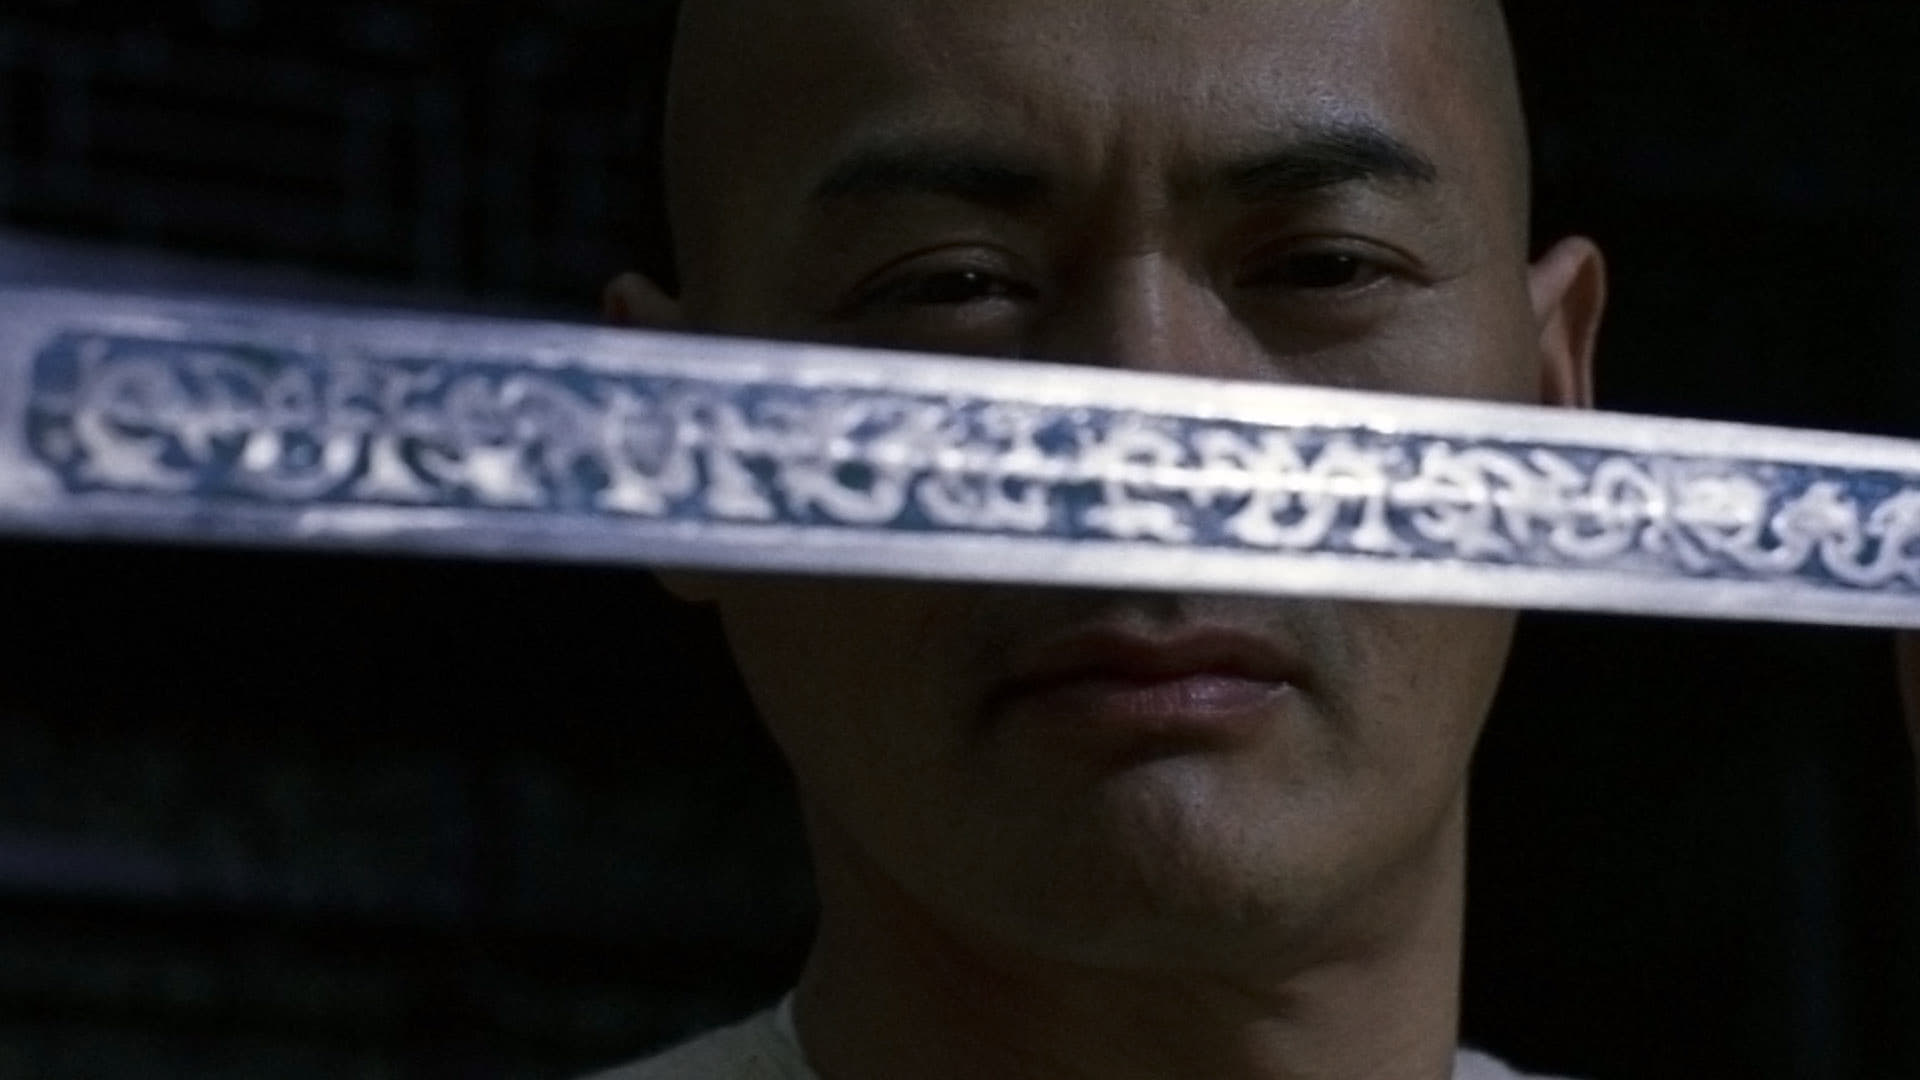 Ngọa Hổ Tàng Long (2000)